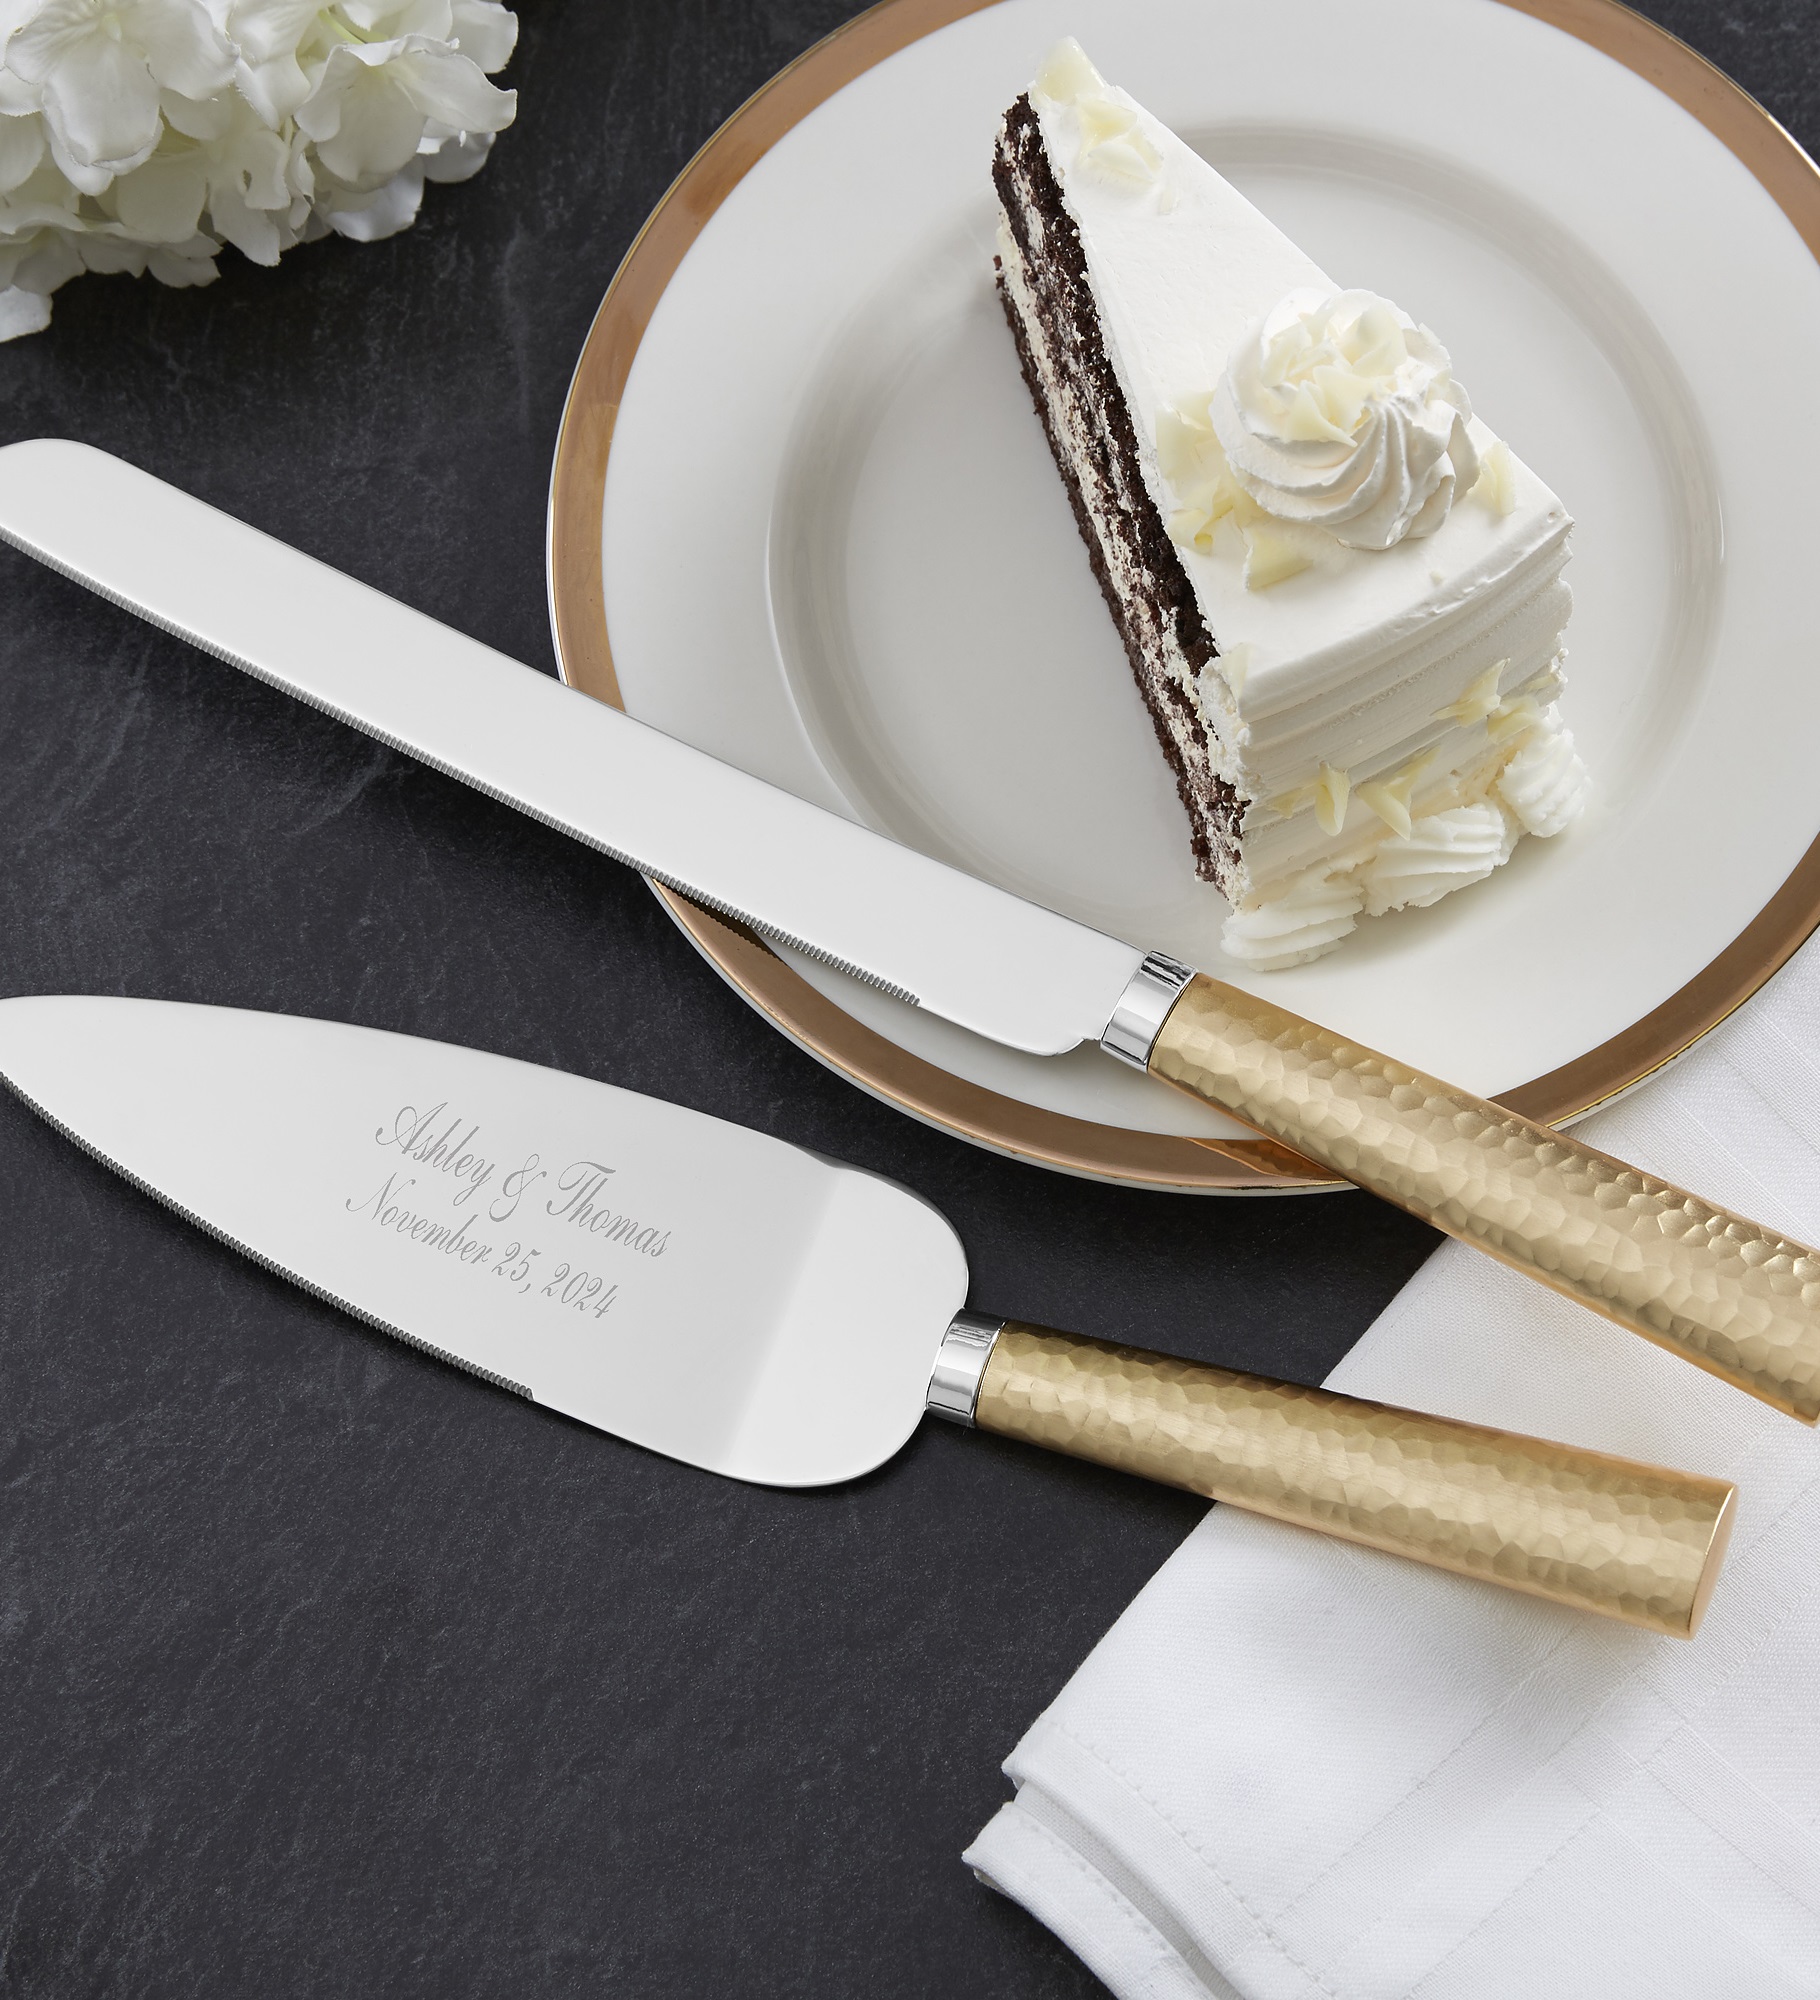 Gold Hammered Engraved Cake Knife & Server Set